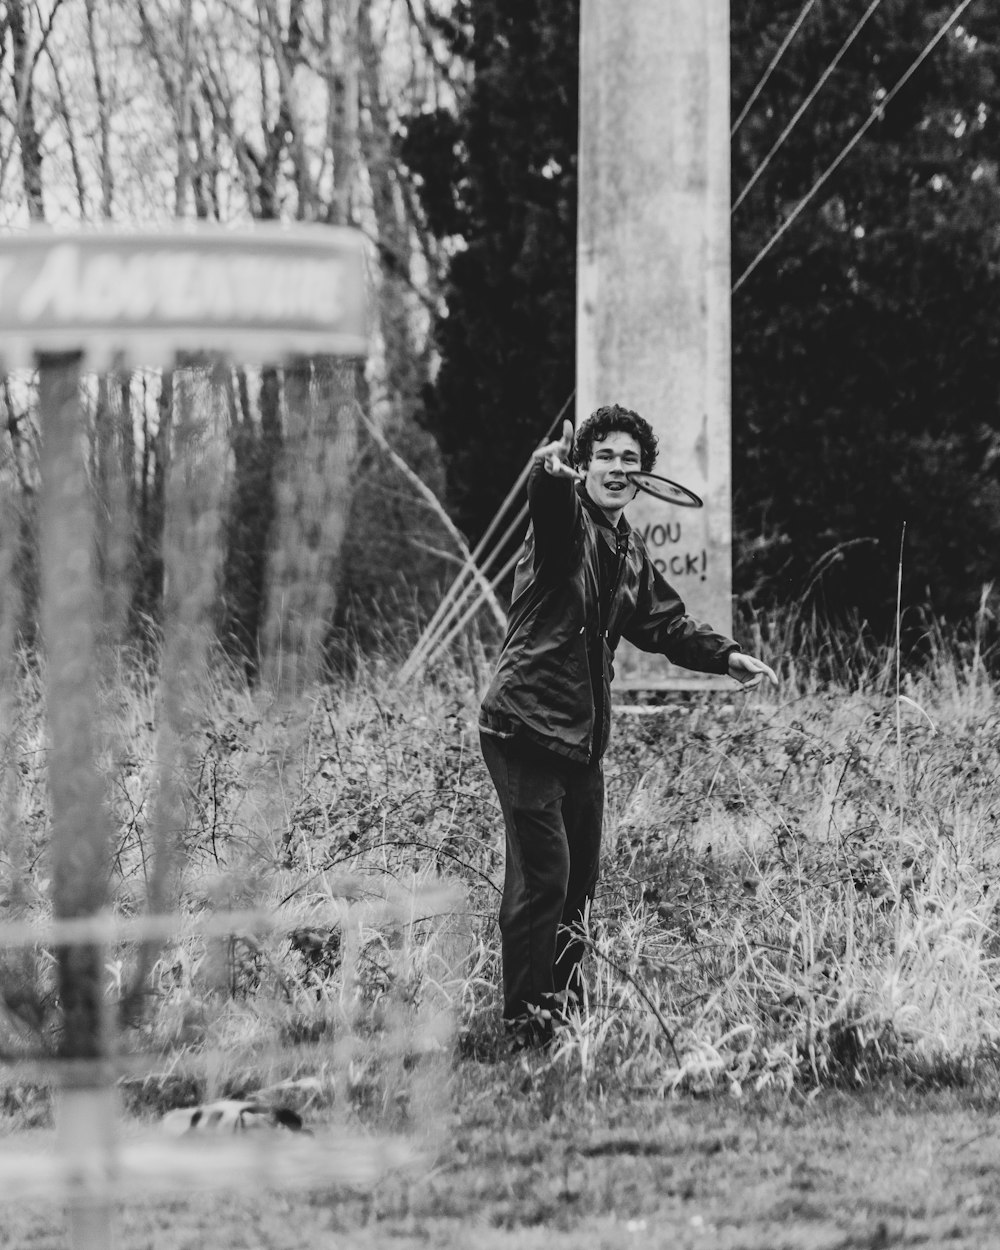 Mann in schwarzer Jacke und Hose neben Betonpfosten in Graustufenfotografie